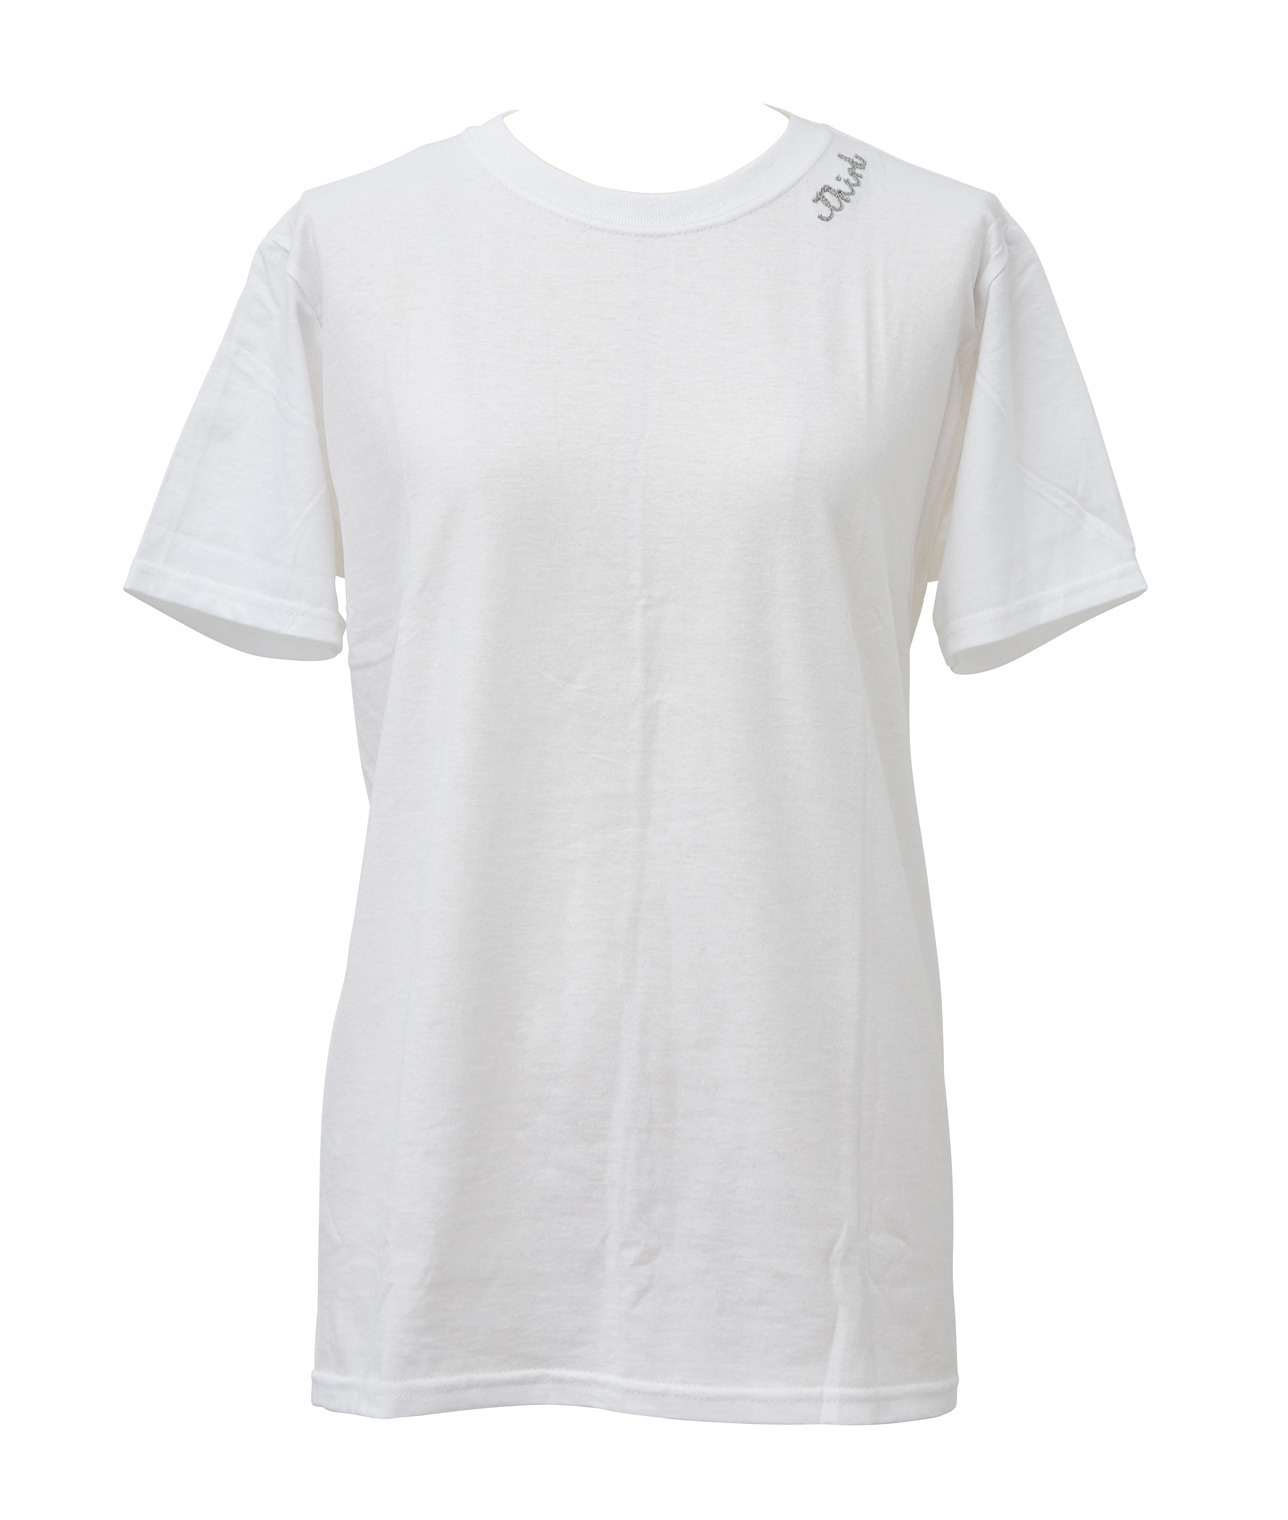 【別注】FRUIT OF THE LOOM/刺繍パックTシャツ 詳細画像 ホワイト/グレー 2